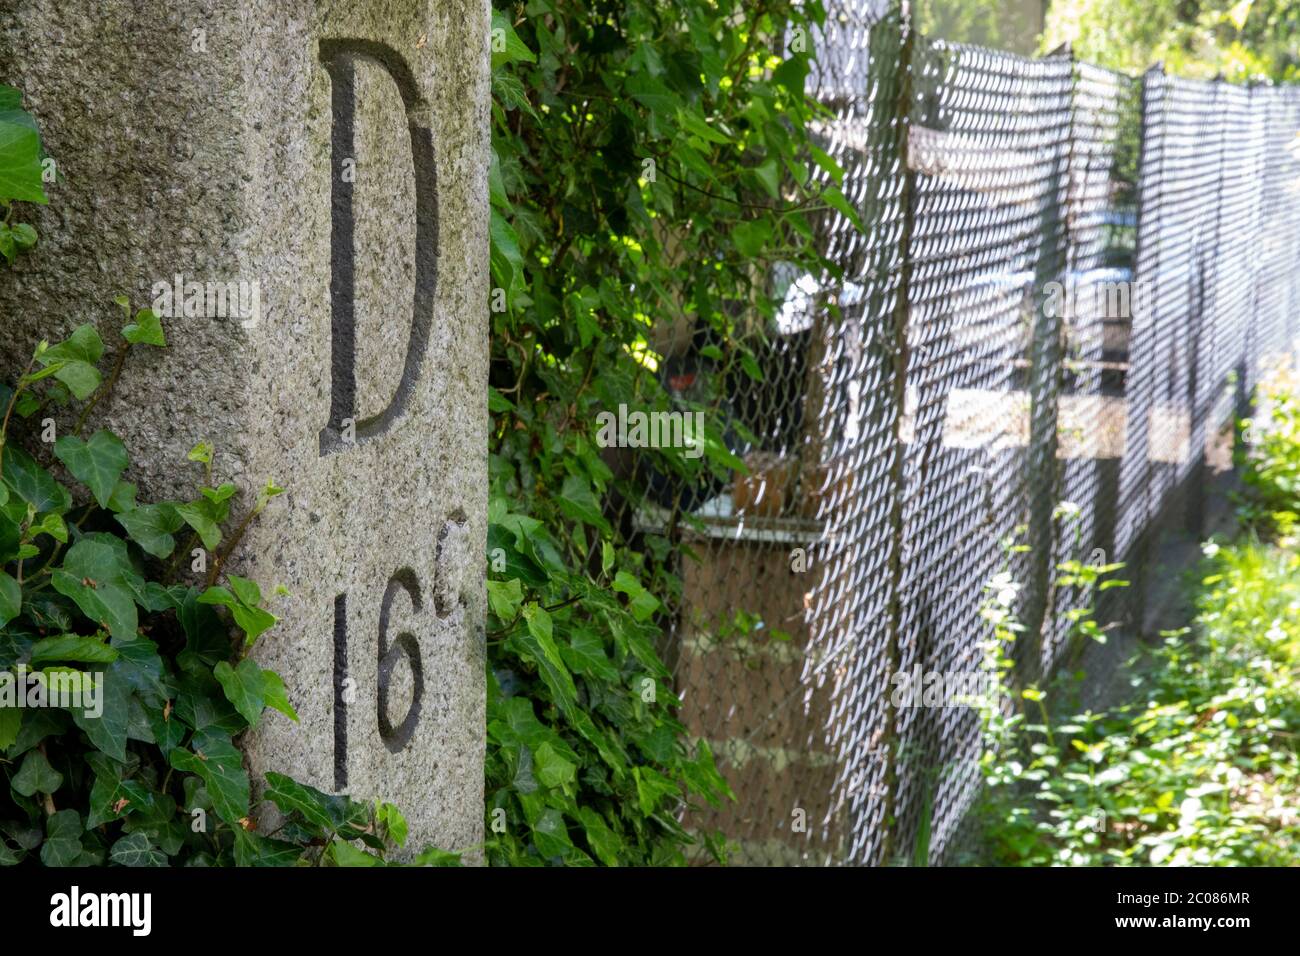 Wegen der Ausbreitung des Corona-Virus haben die Schweiz und Deutschland ihre Grenzen geschlossen. Alter Hintergarten-Grenzaun mit Grenzstein D16C. K Foto Stock